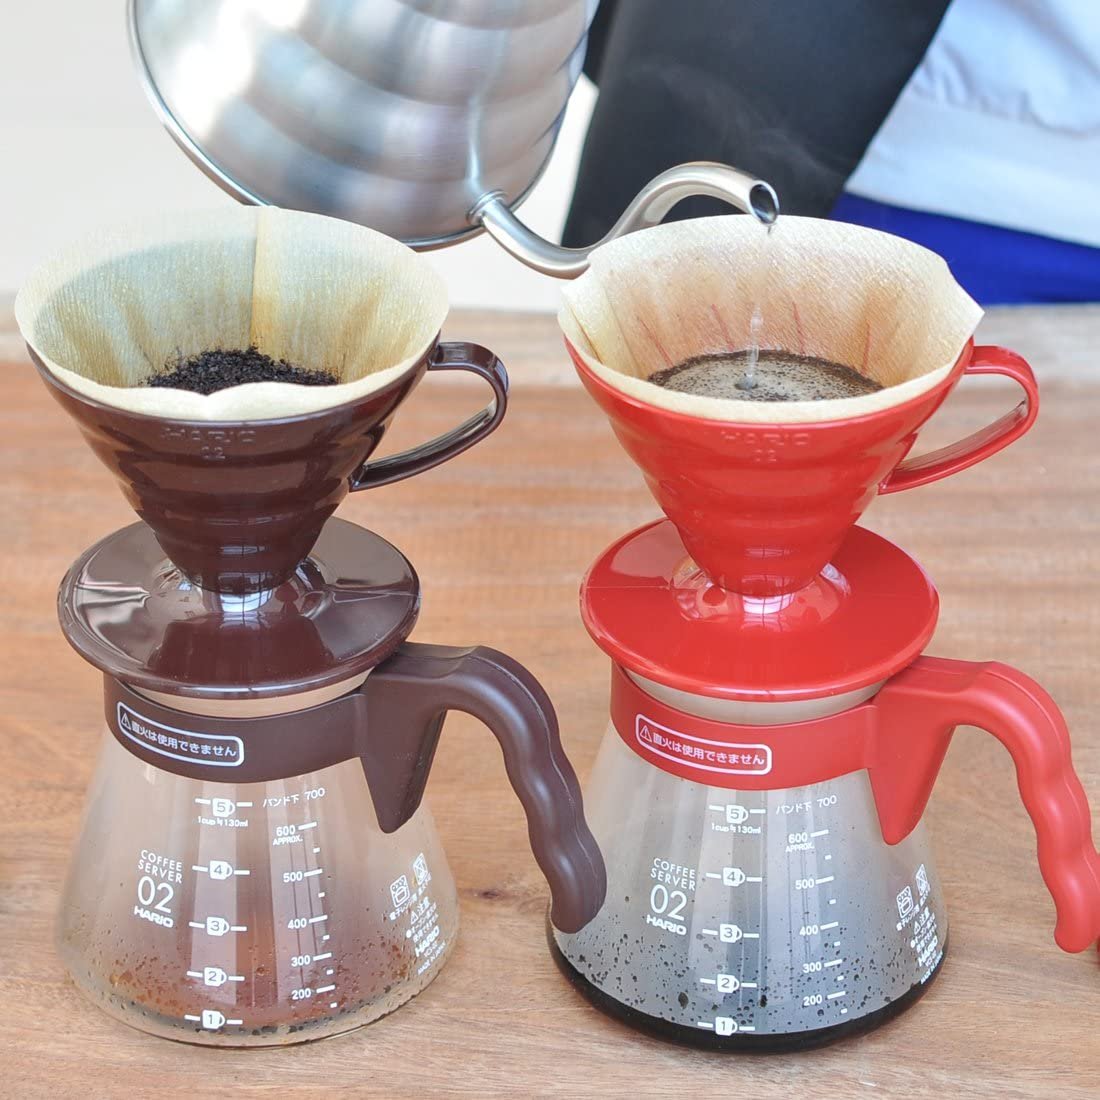 Descubriendo la excelencia del café con la cafetera Hario V60 – deteacafe